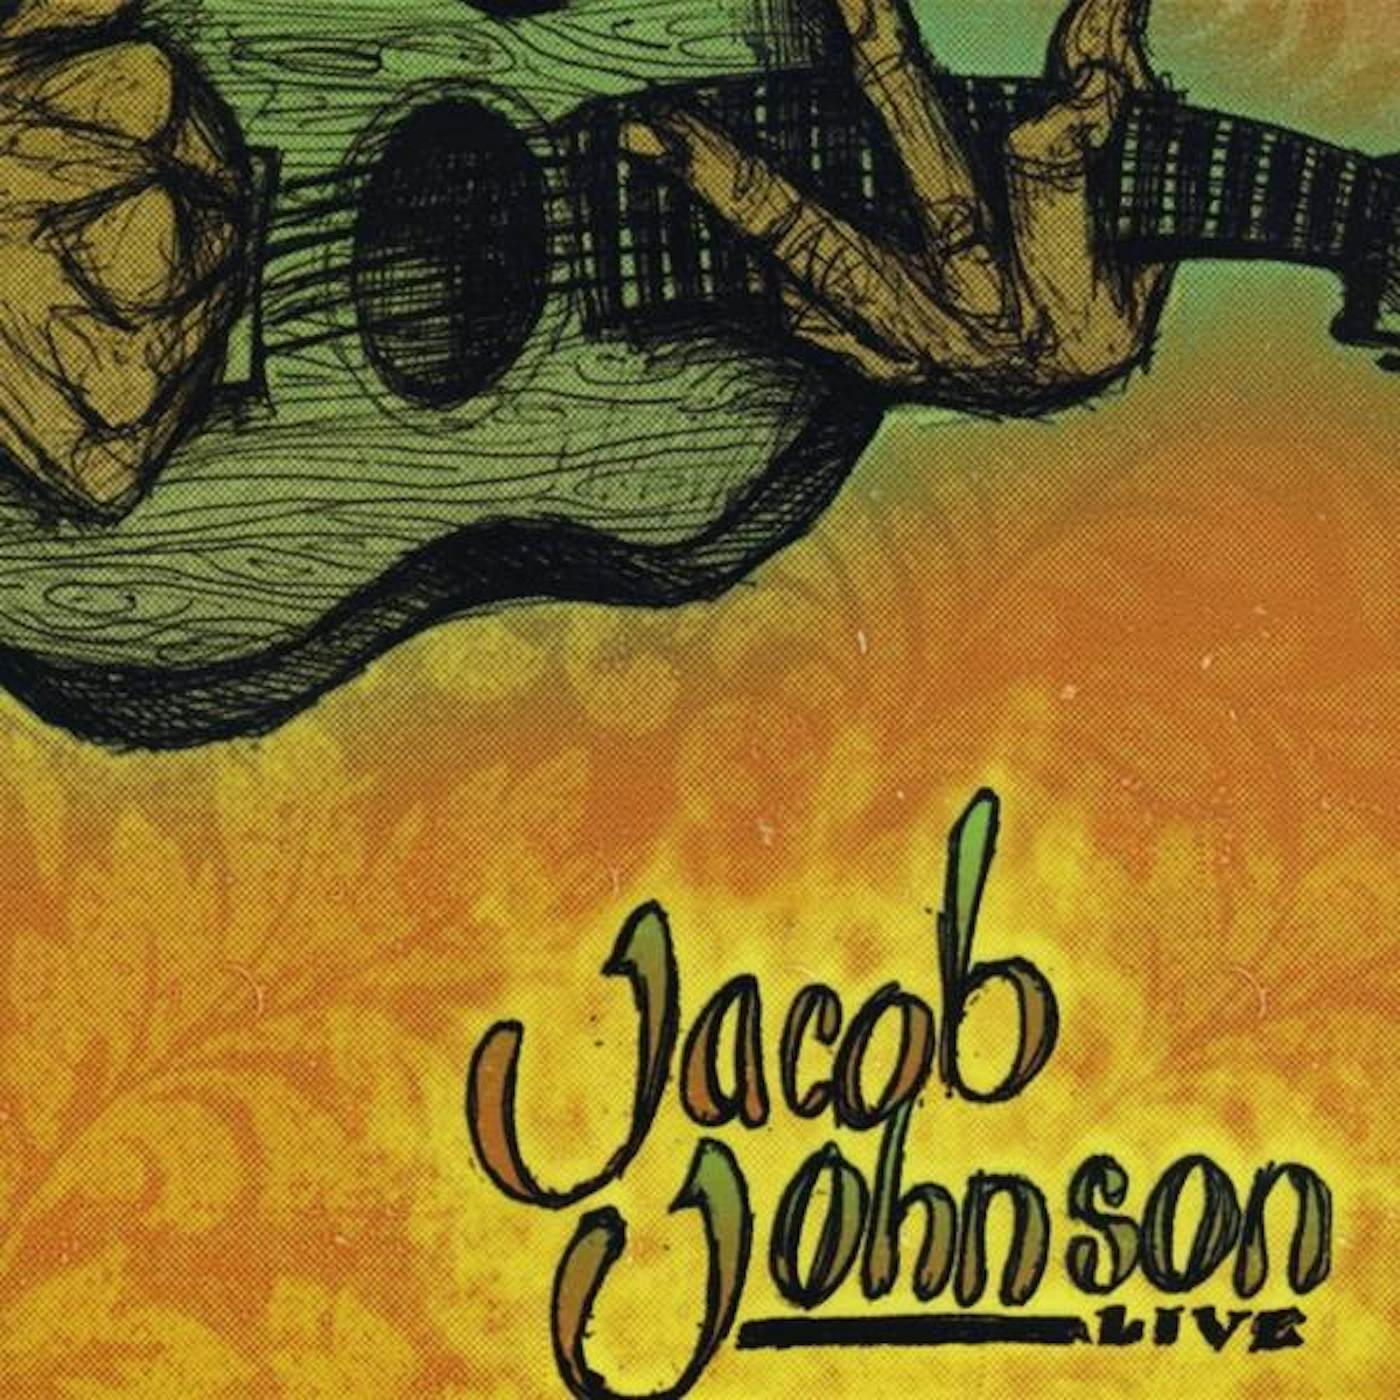 Jacob Johnson LIVE CD